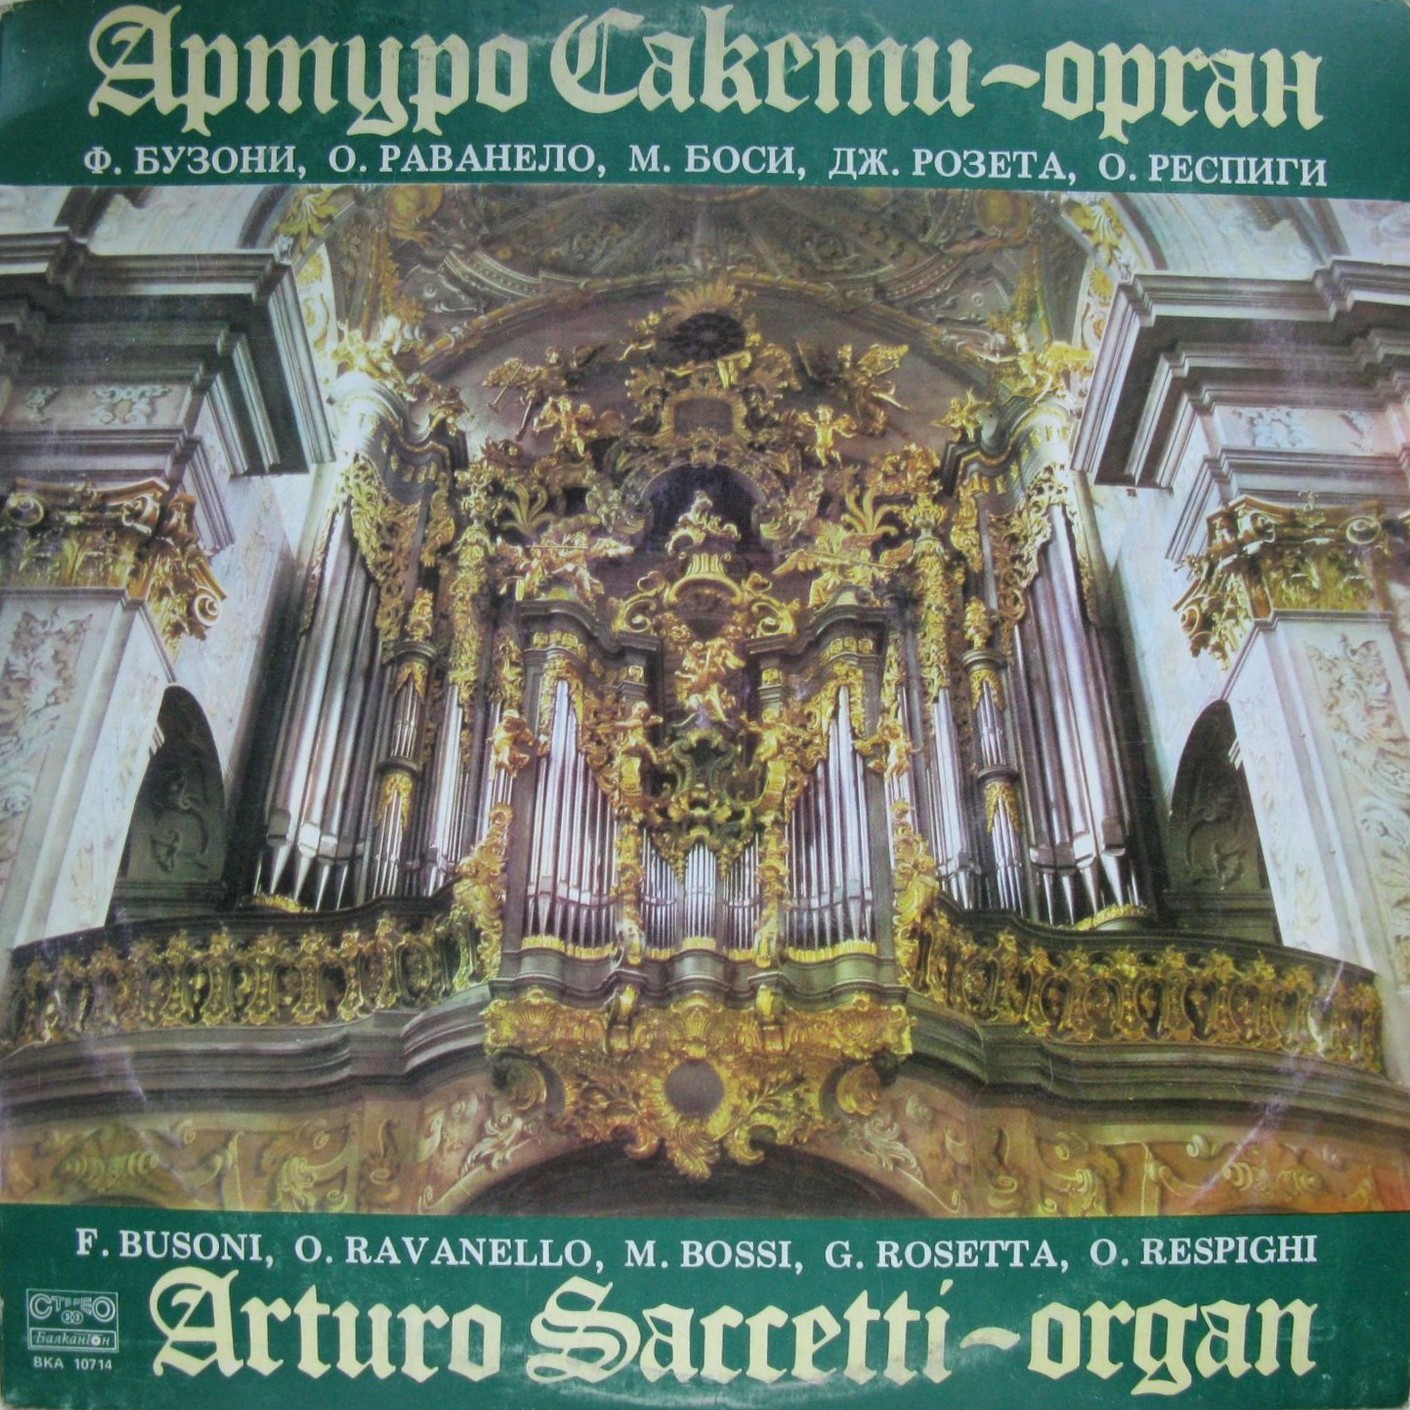 Артуро Сакети - орган